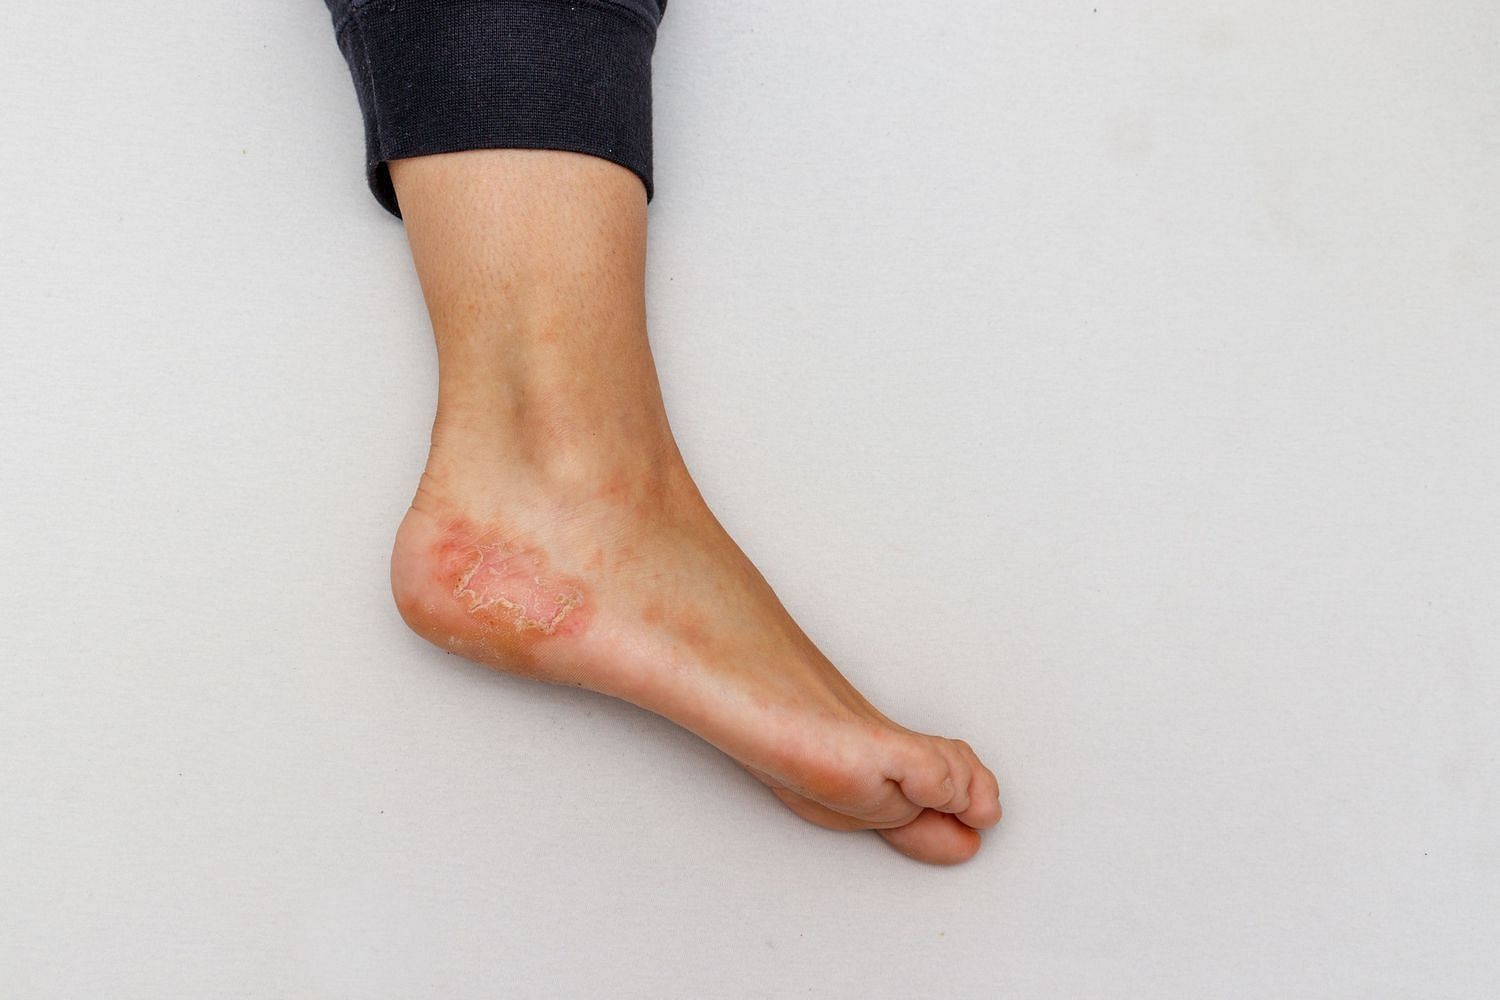 mild eczema on feet